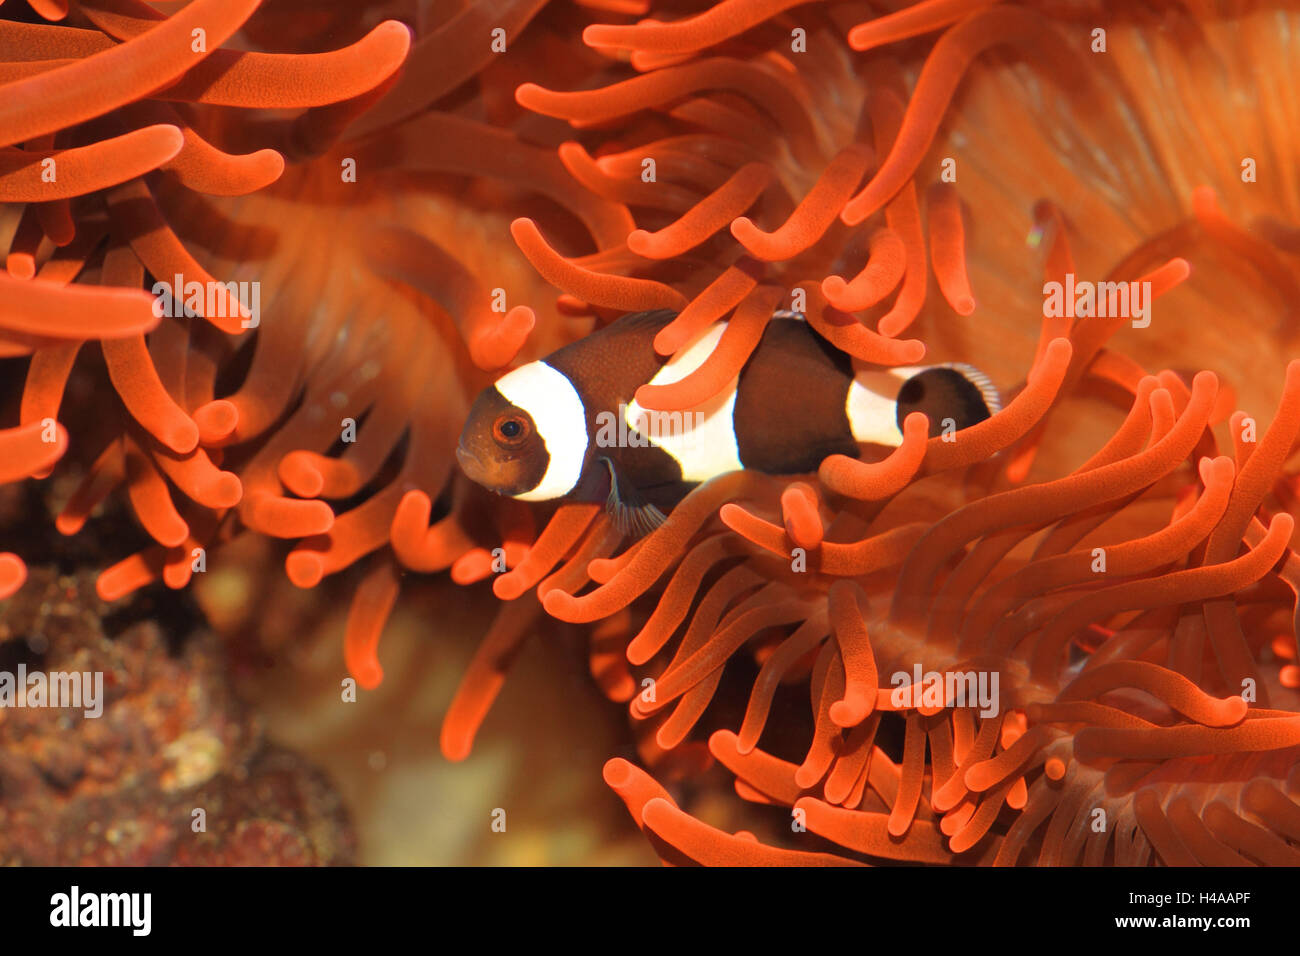 Clark anemonefish, Foto Stock